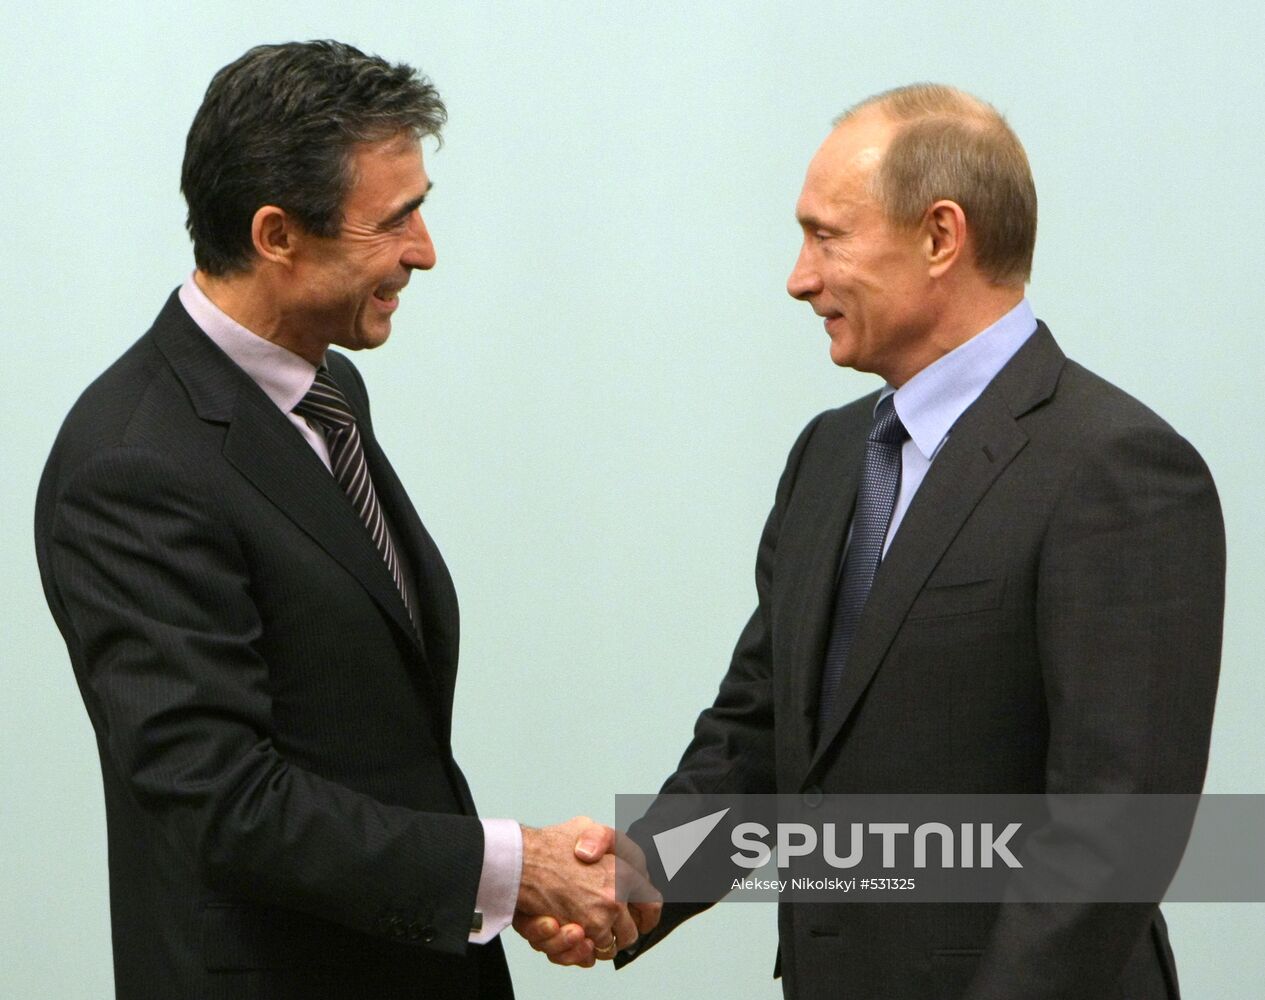 Vladimir Putin meets with Anders Fogh Rasmussen